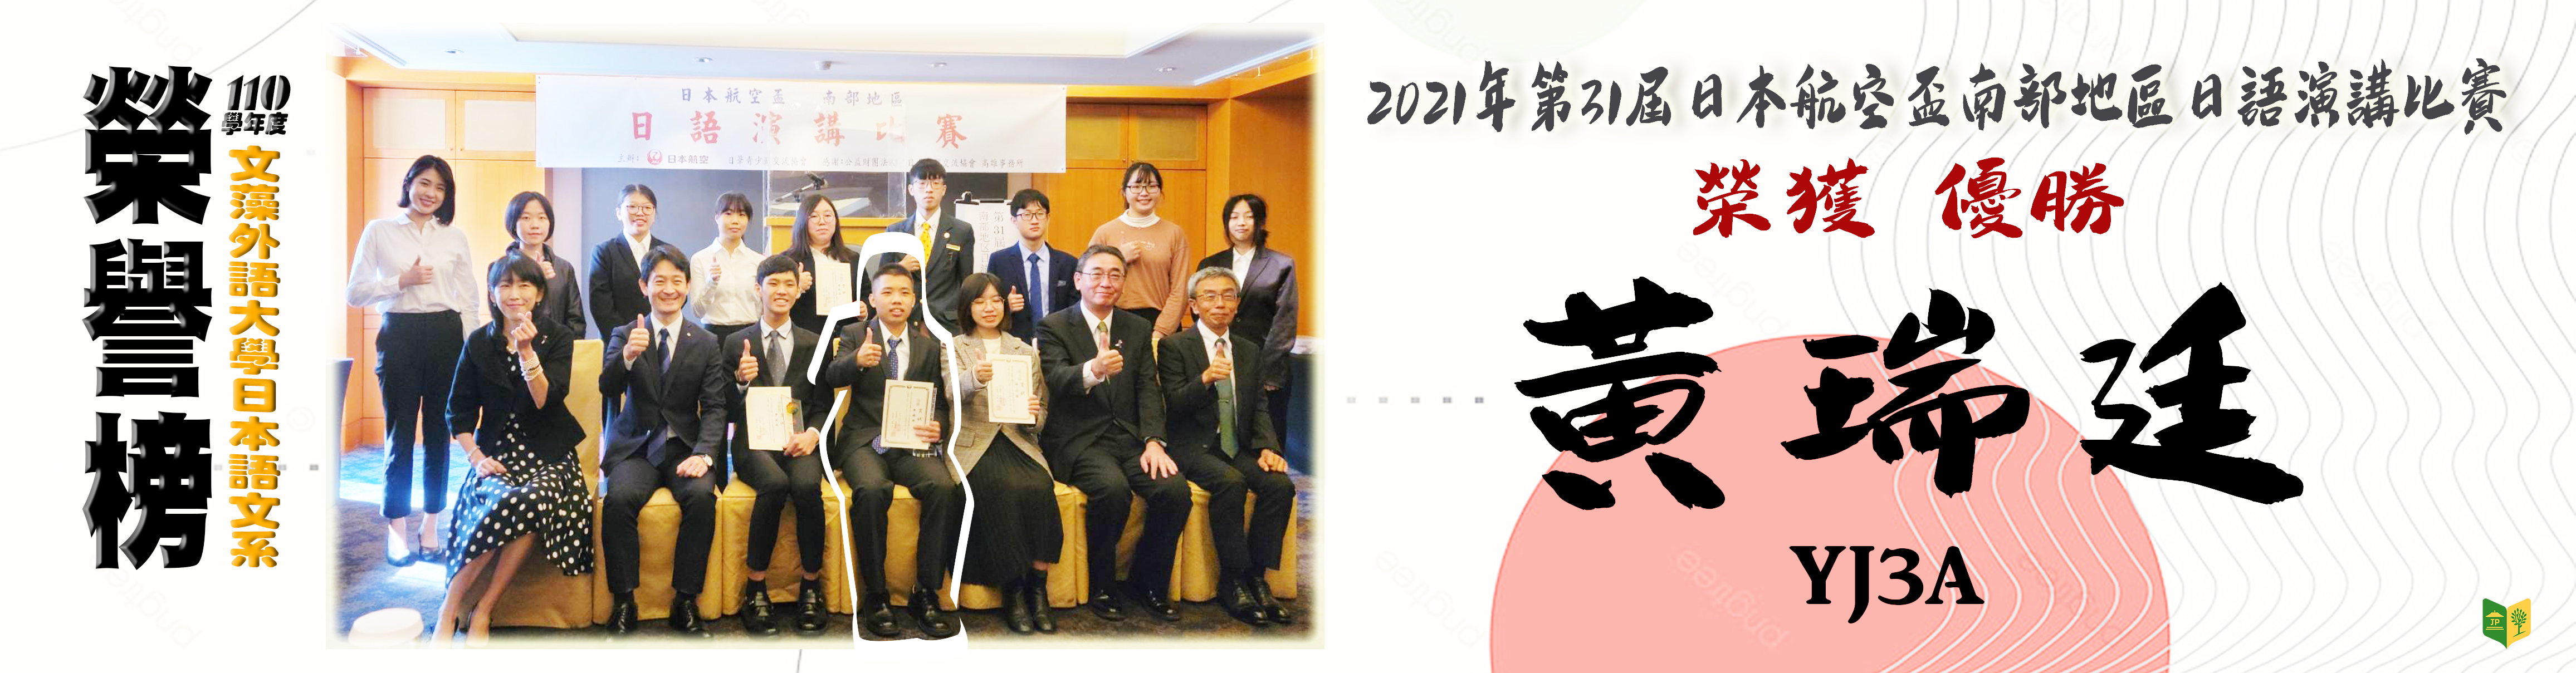 2021年第31屆日本航空盃南部地區日語演講比賽(另開新視窗)